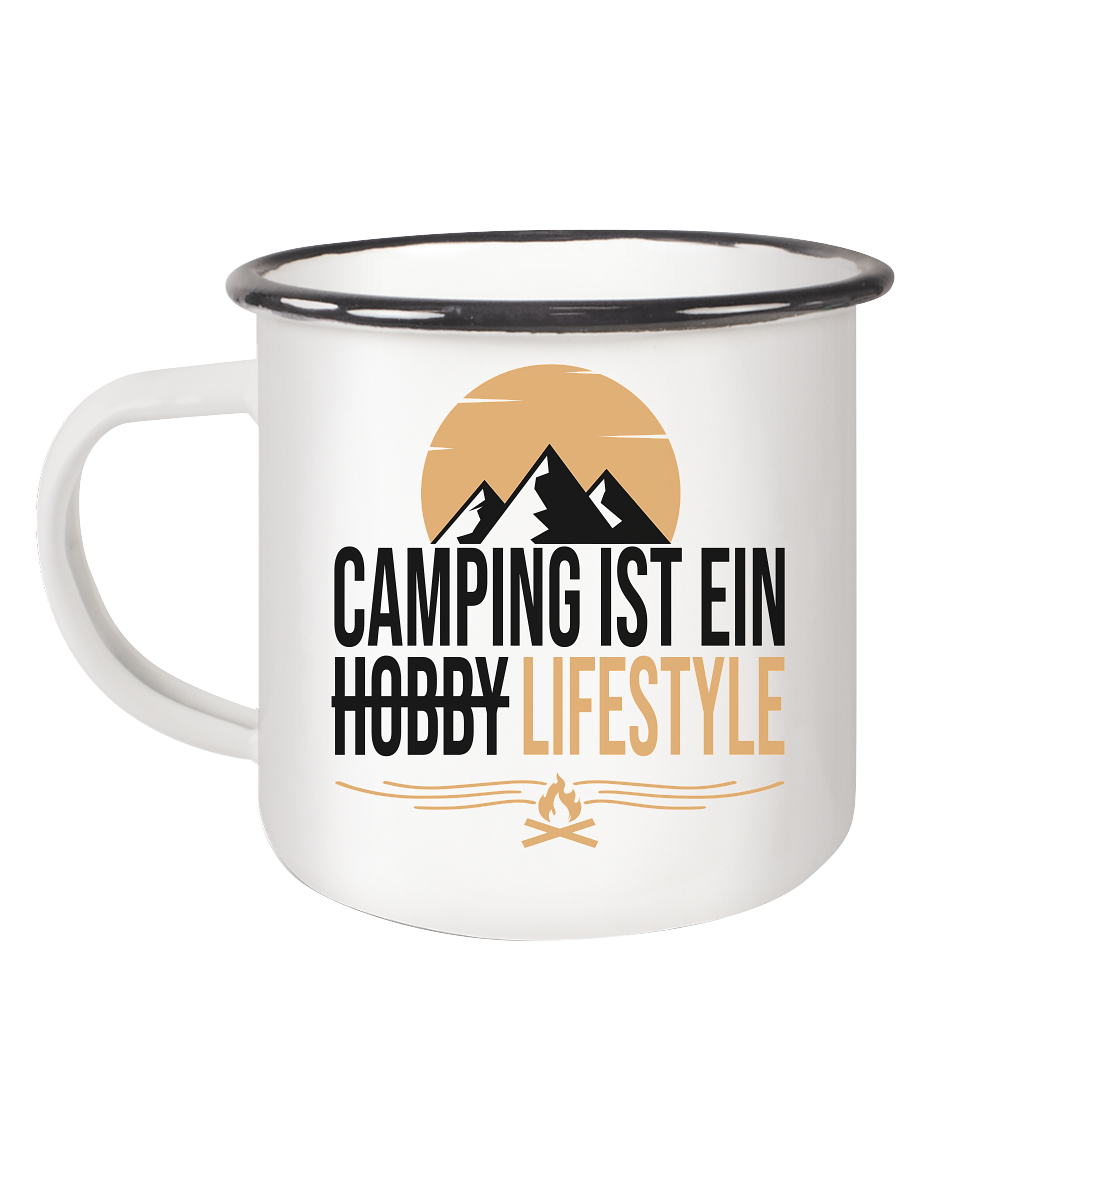 Camping ist ein Lifestyle - Emaille Tasse (Black)